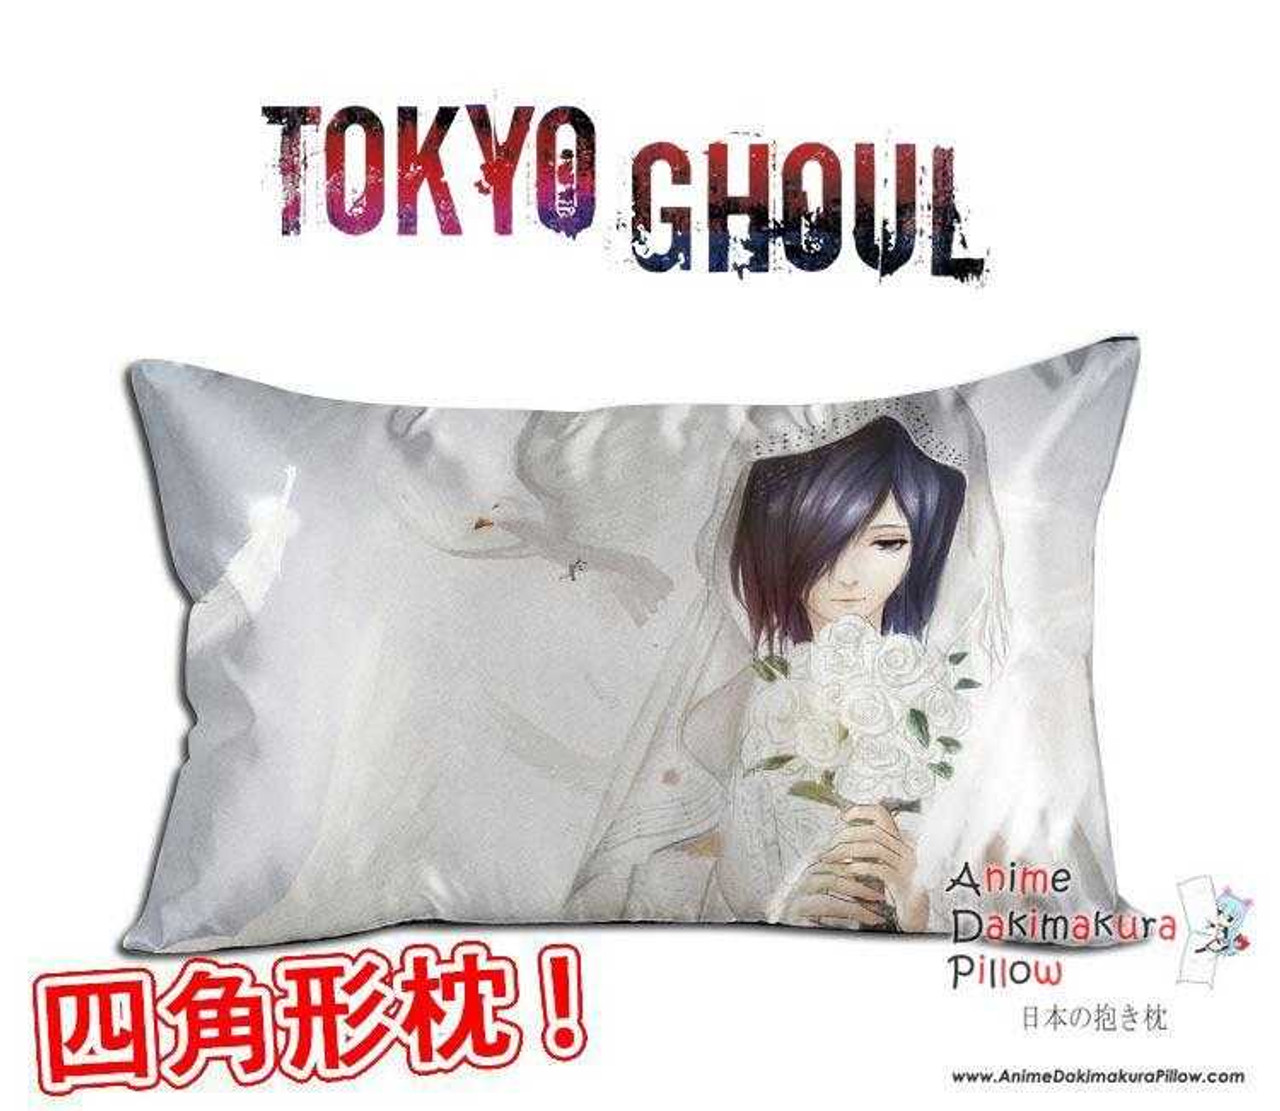 New Touka Kirishima Tokyo Ghoul Anime Waifu Dakimakura Rectangle 40x70cm Pillow Cover Gzfong 41 4764